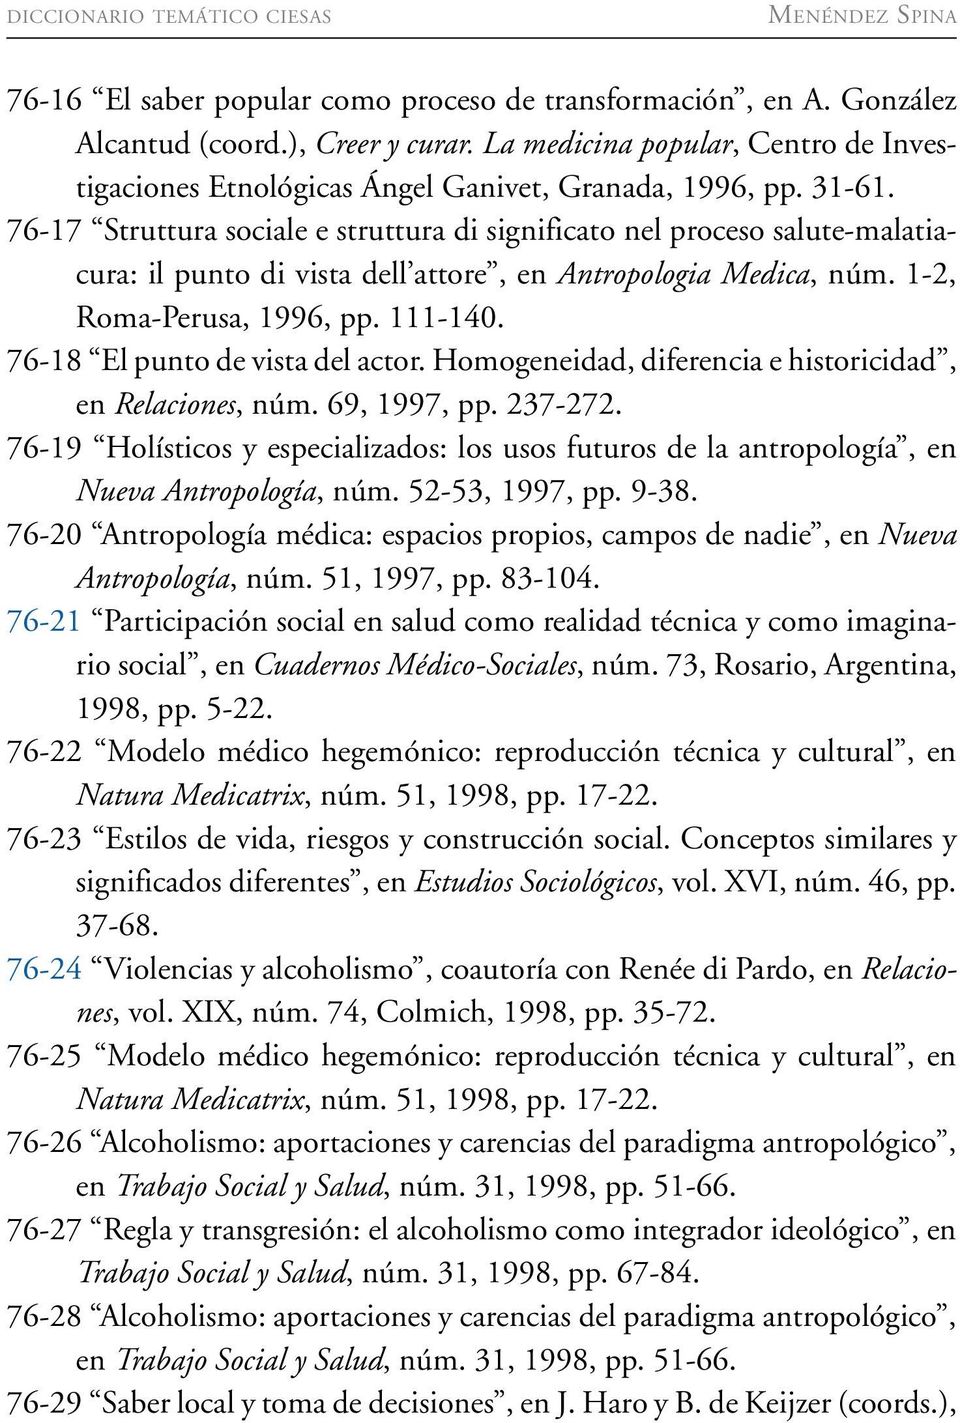 76-17 Struttura sociale e struttura di significato nel proceso salute-malatiacura: il punto di vista dell attore, en Antropologia Medica, núm. 1-2, Roma-Perusa, 1996, pp. 111-140.